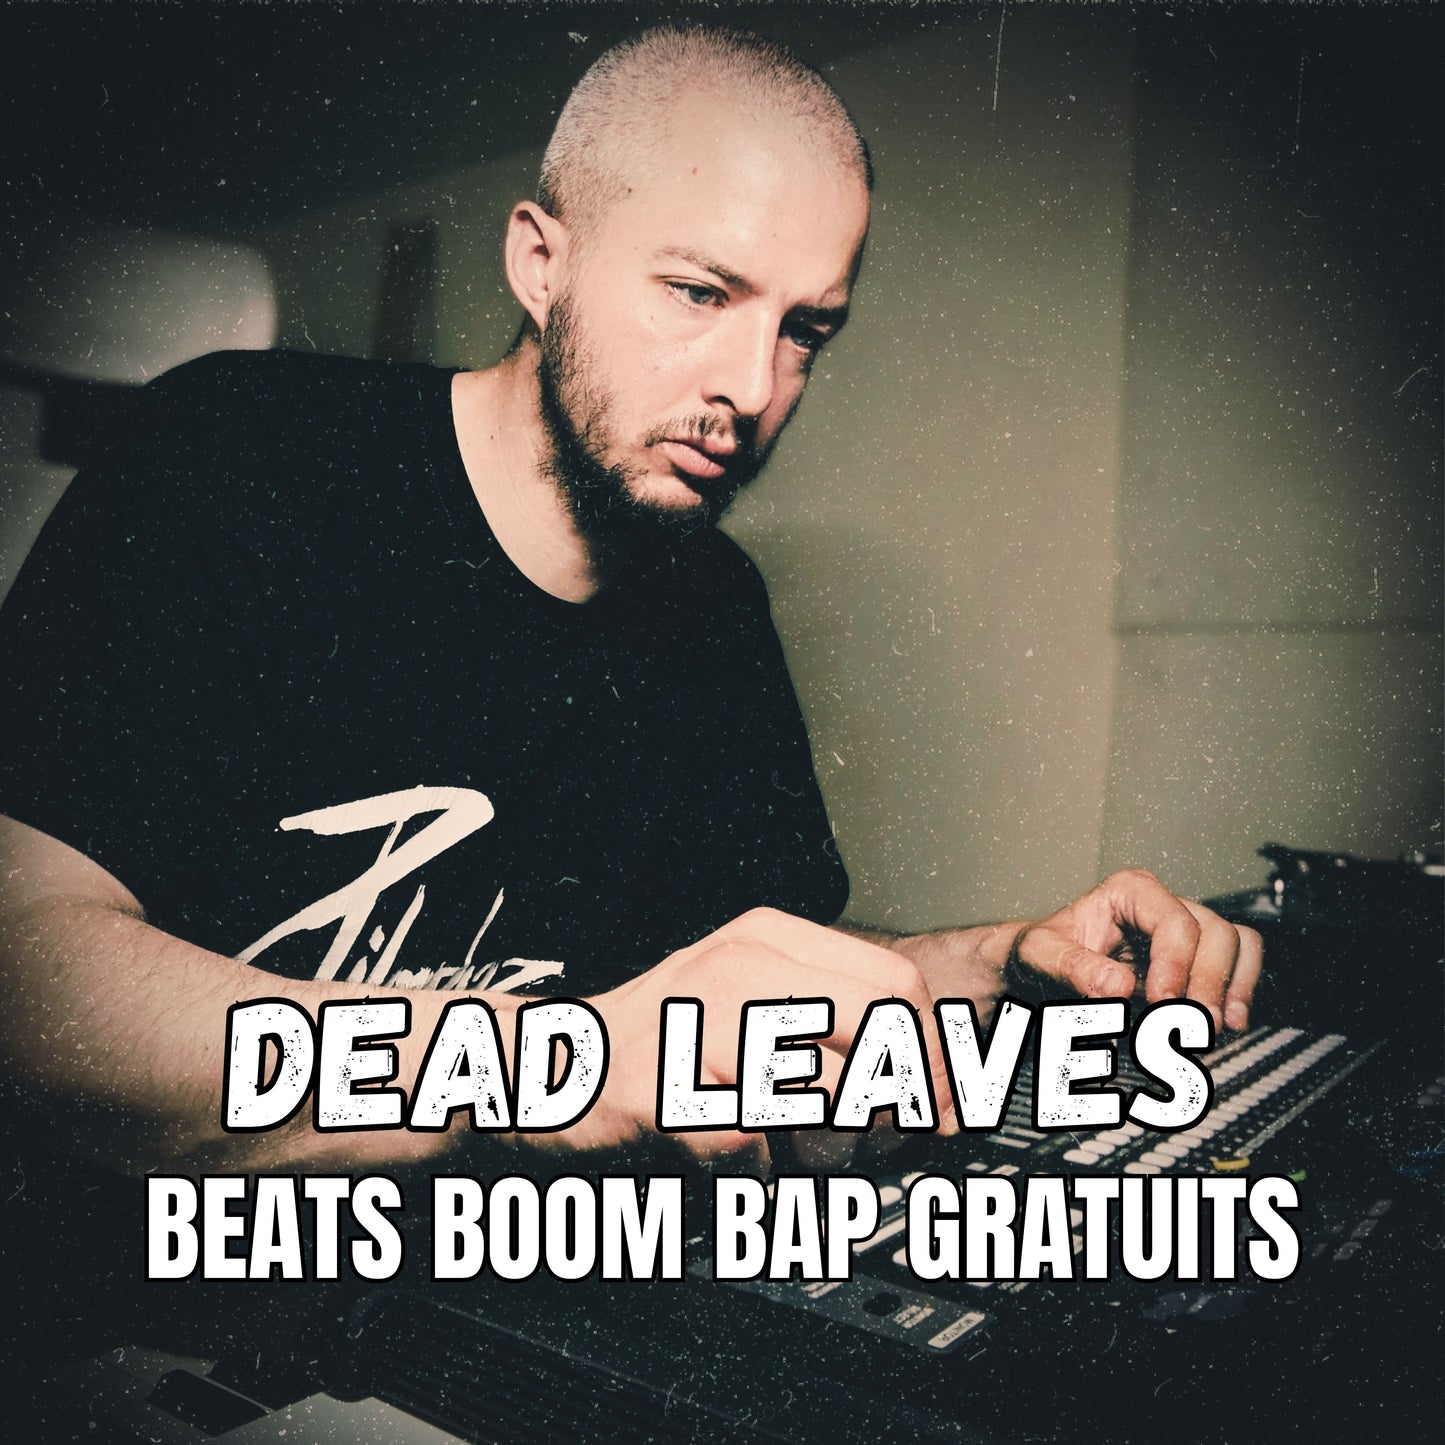 Découvrez le beat Boom Bap gratuit du beatmaker Hip Hop Nizuk, Dead Leaves !